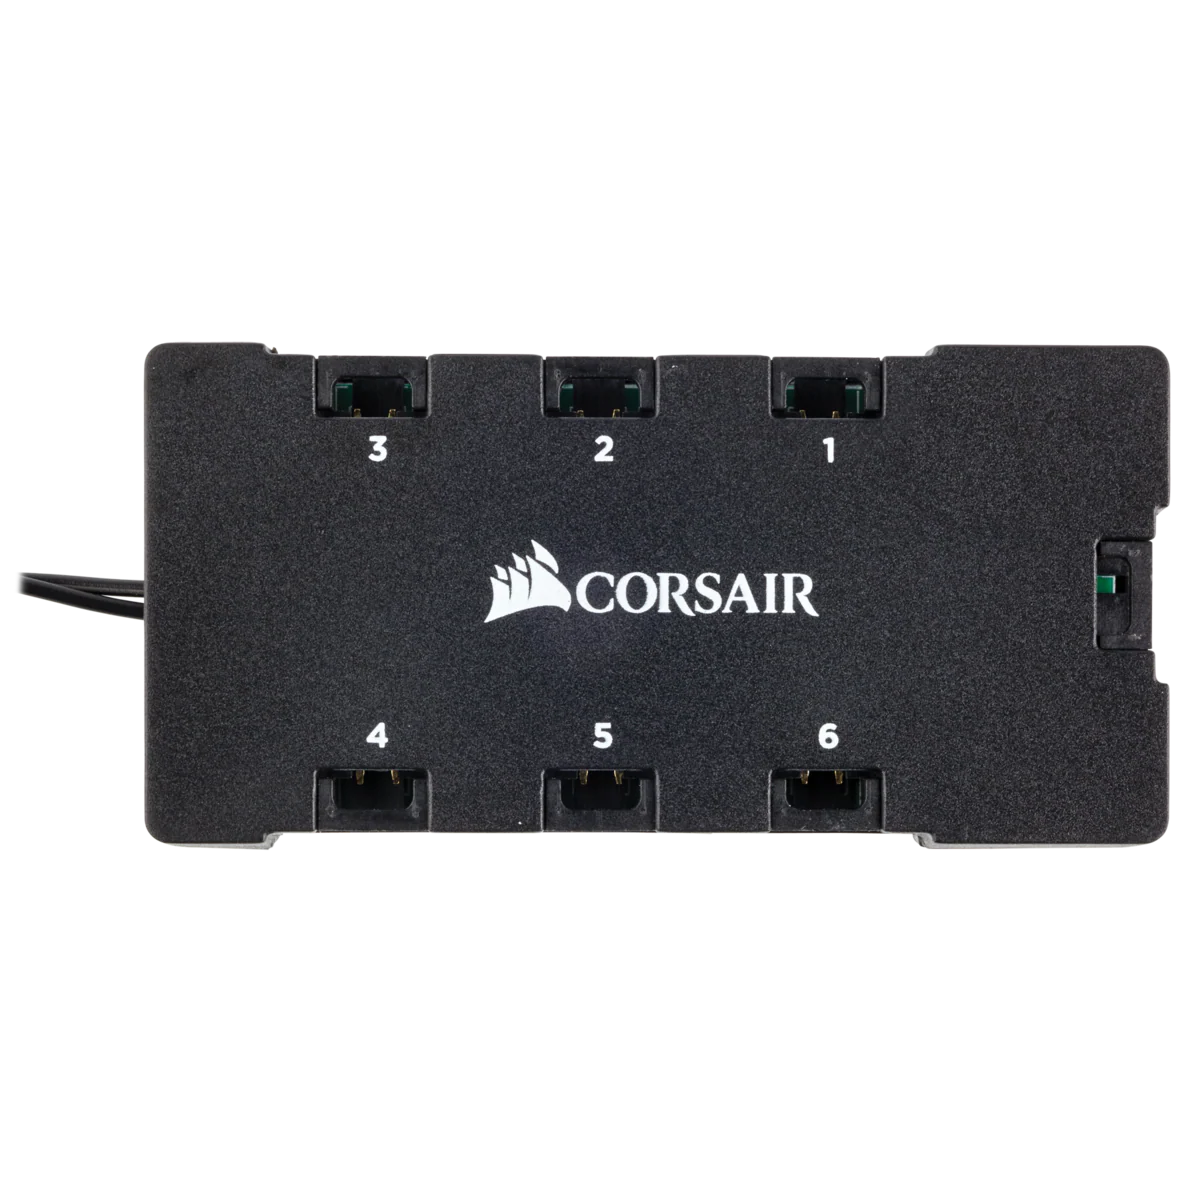 Fan Corsair ML120 Pro RGB Led, 12 cm, 1600 RPM, 13.2 VDC, 4 pines, PWM Control (Pack de 3 unidades)